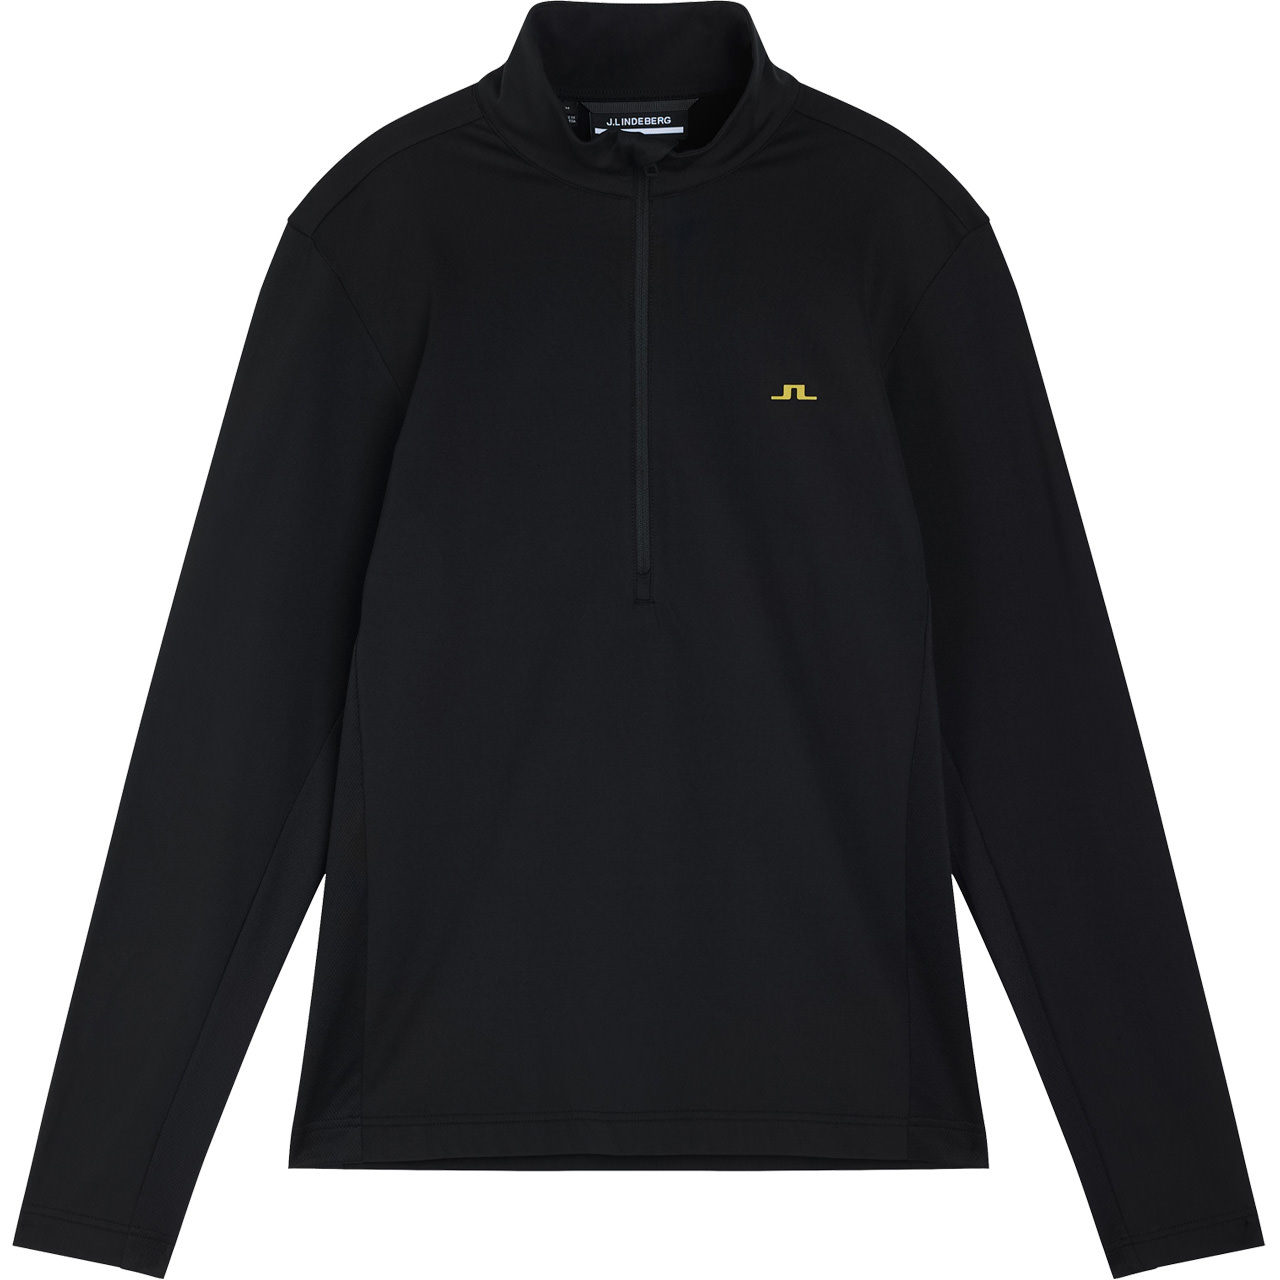 J.Lindeberg Skishirt LUKE black |Men skiwear | Skiwear | Alpine Skis | XSPO.com